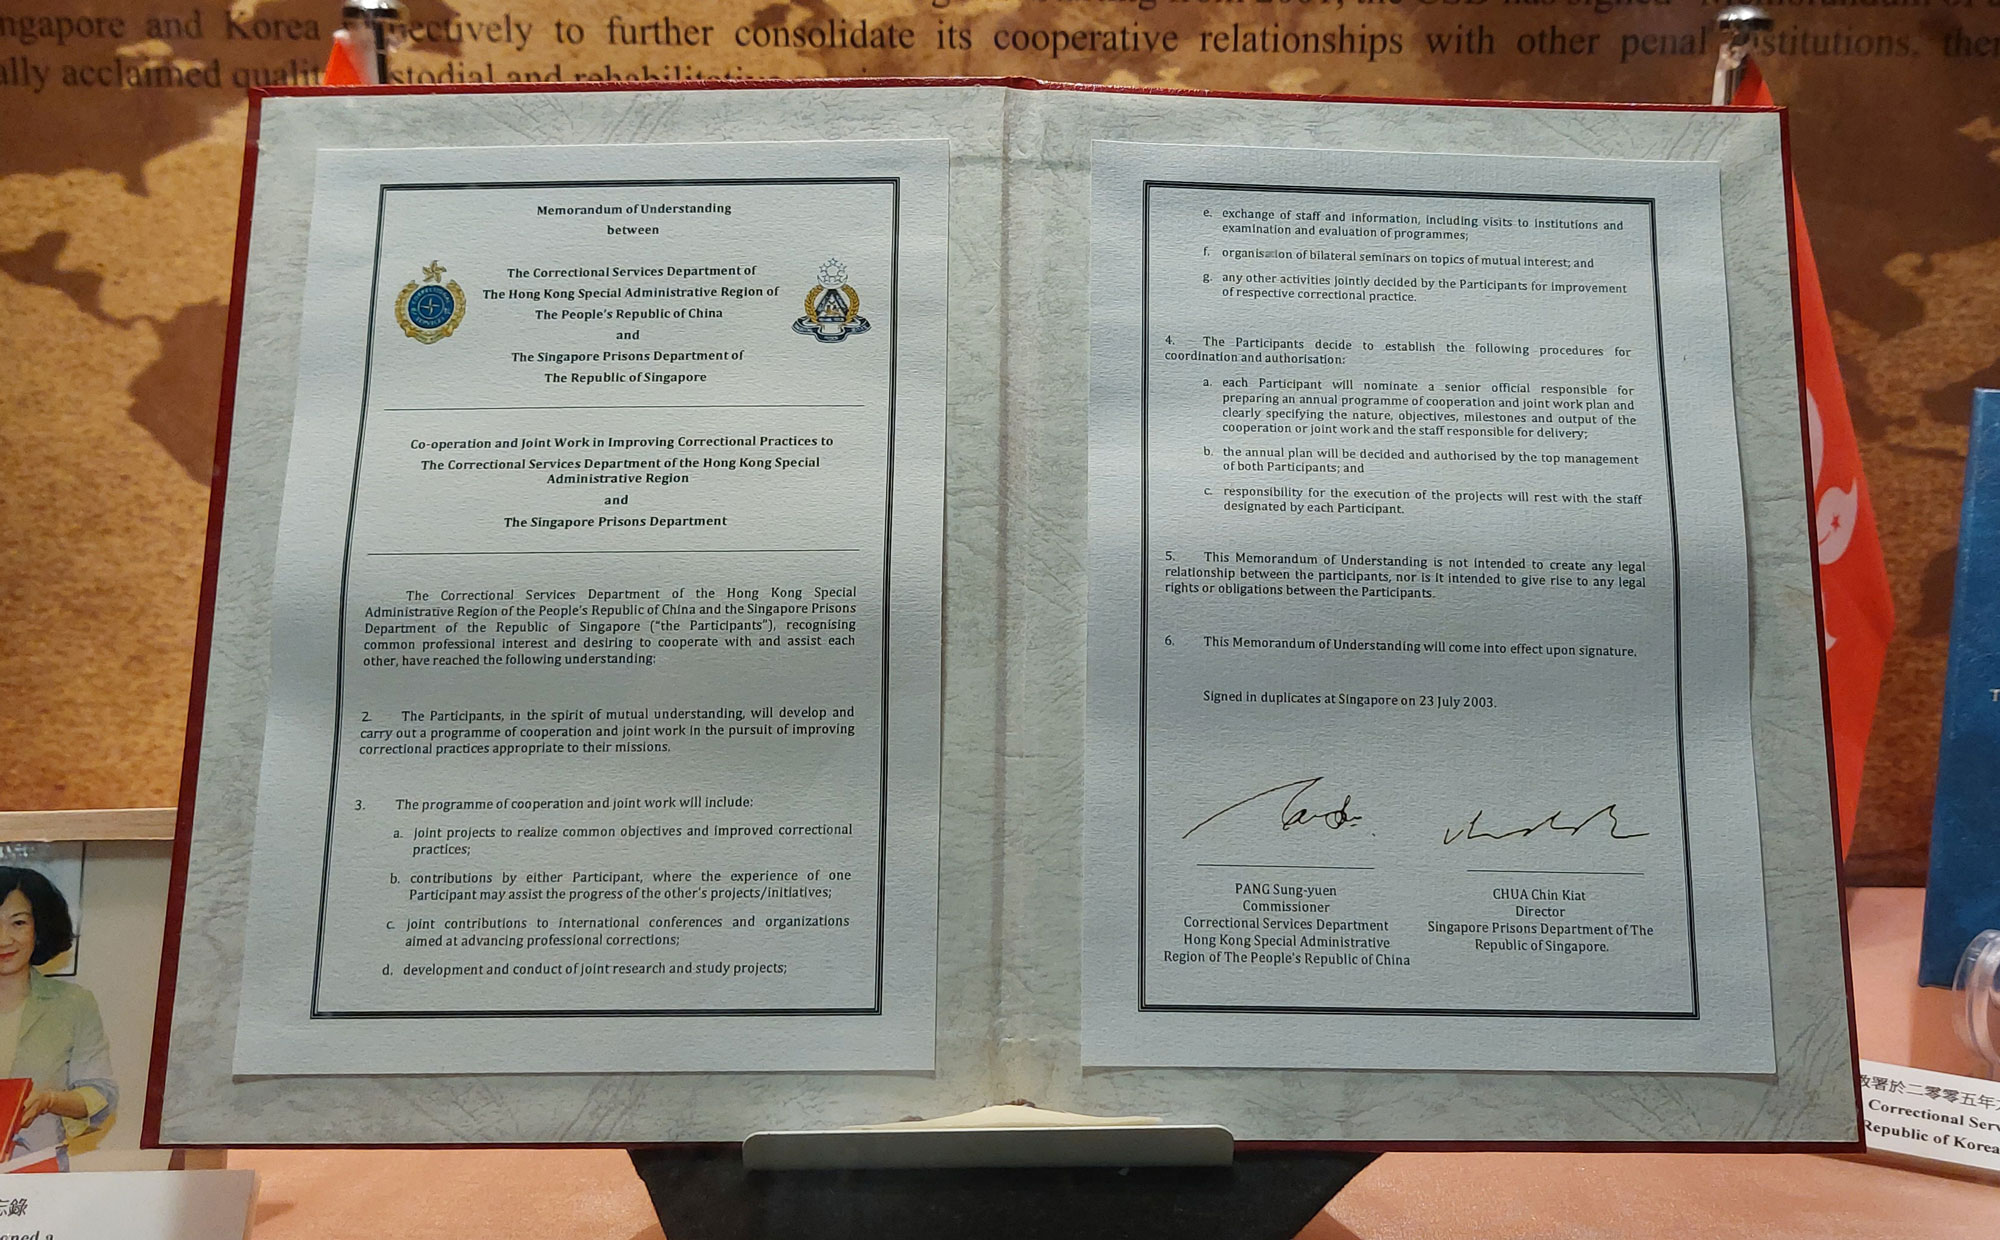 懲教署分別與新加坡、韓國及加拿大的懲教機構簽署諒解備忘錄。